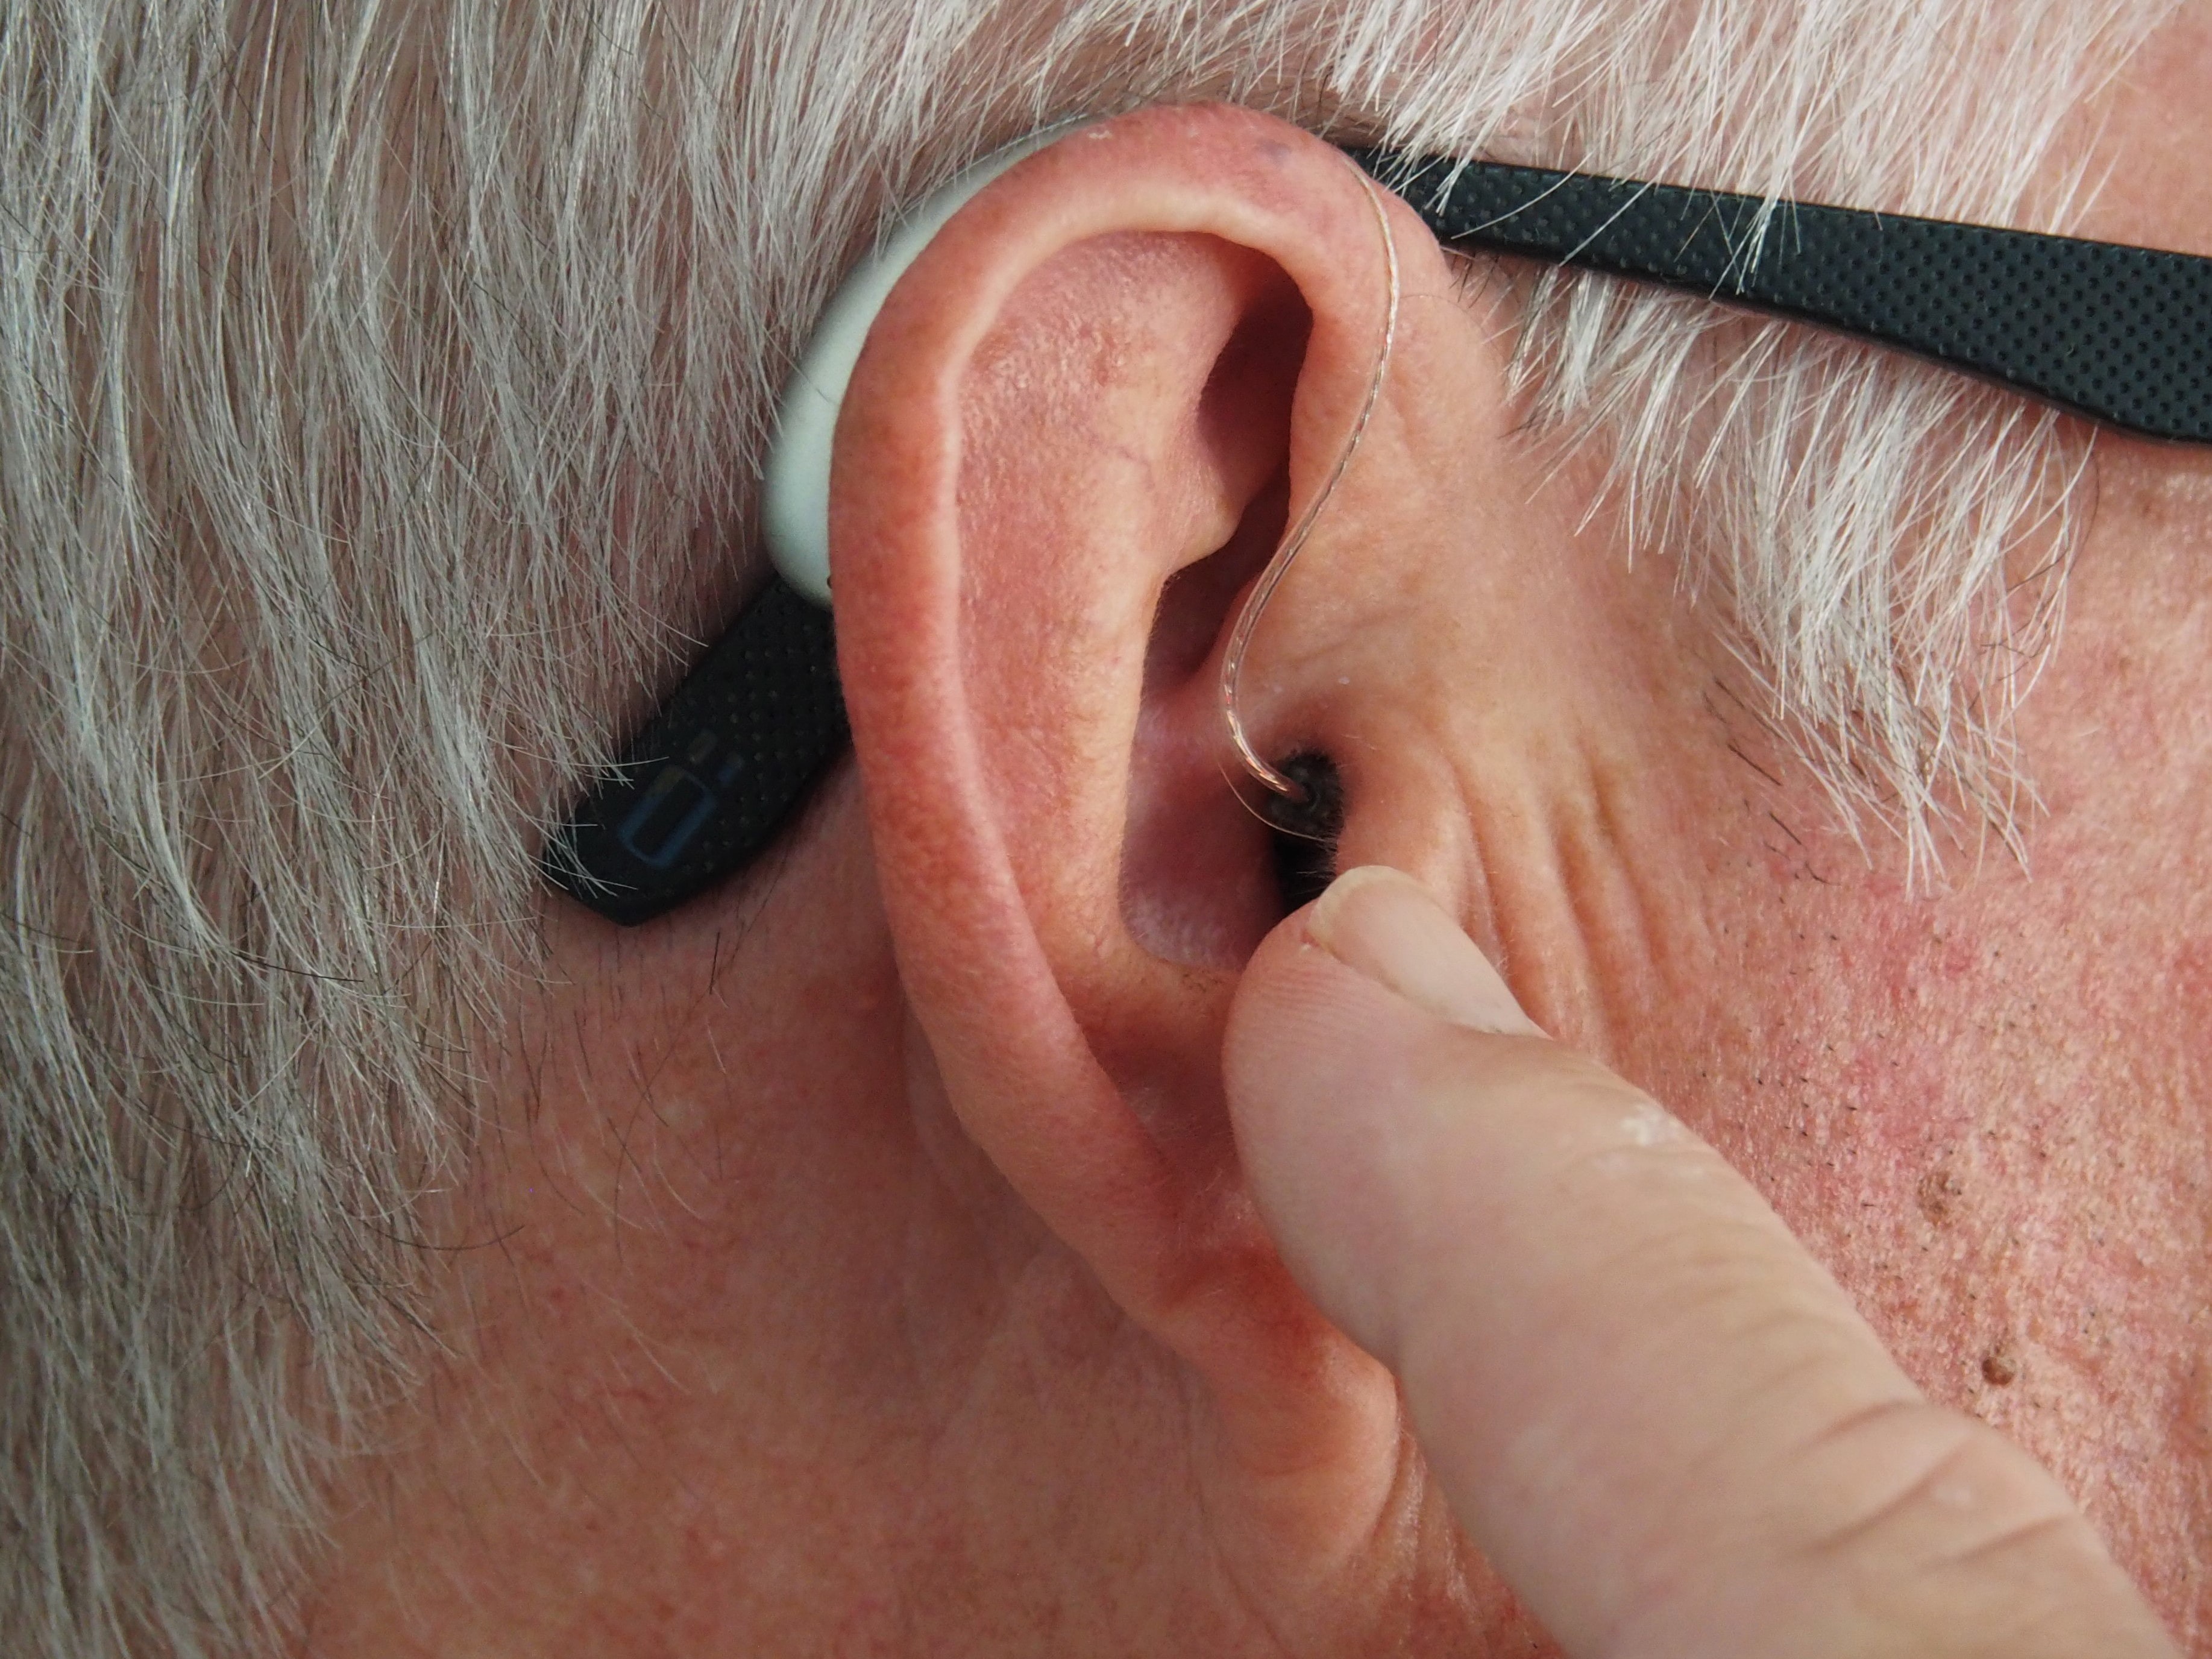 Hearing Loop